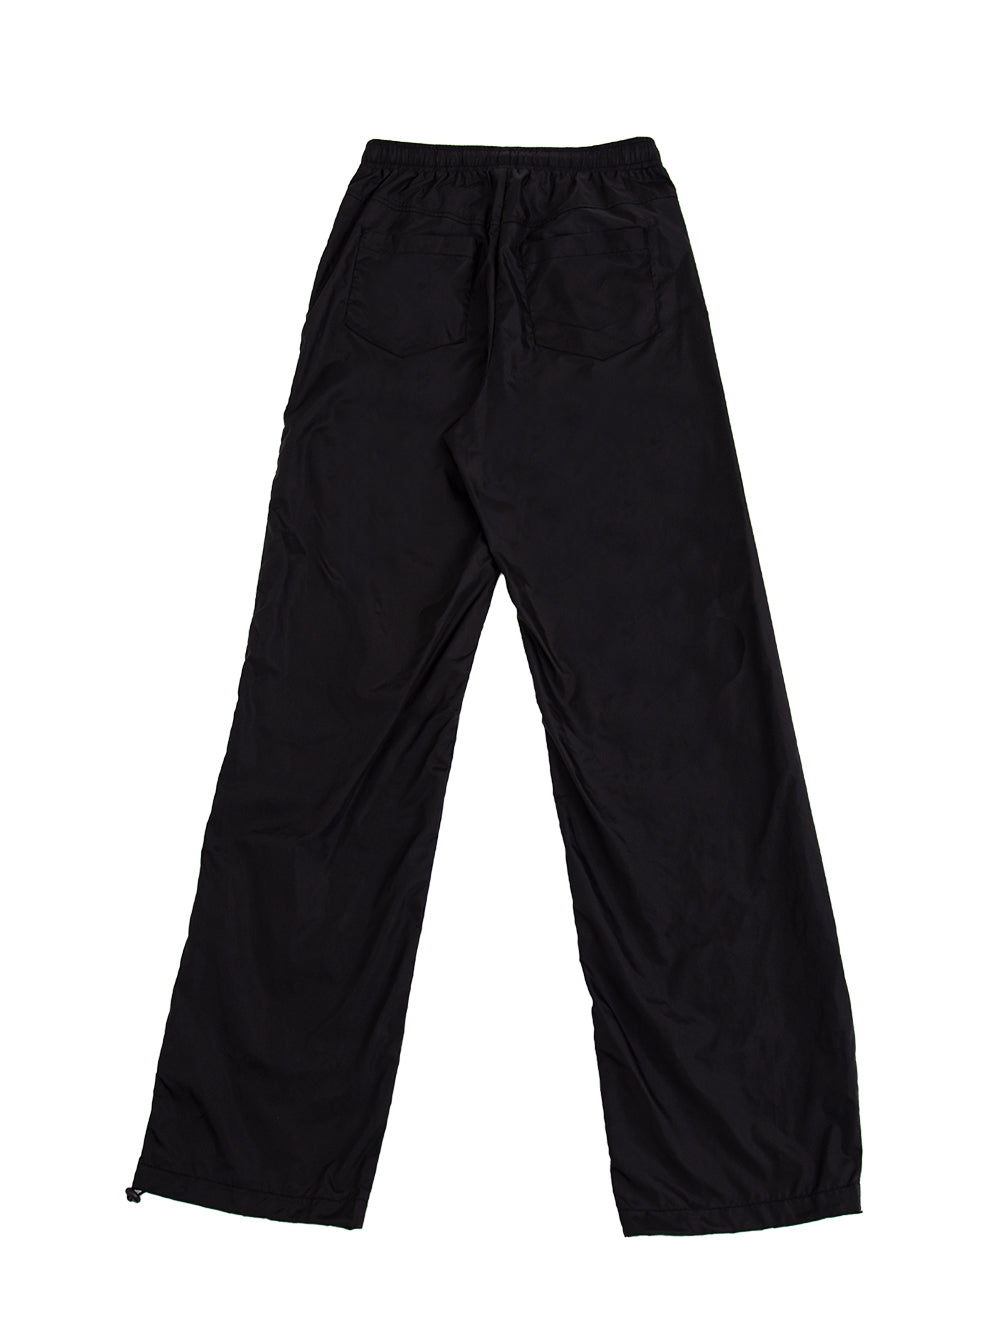 Tucked Windbreaker Pants (Black)